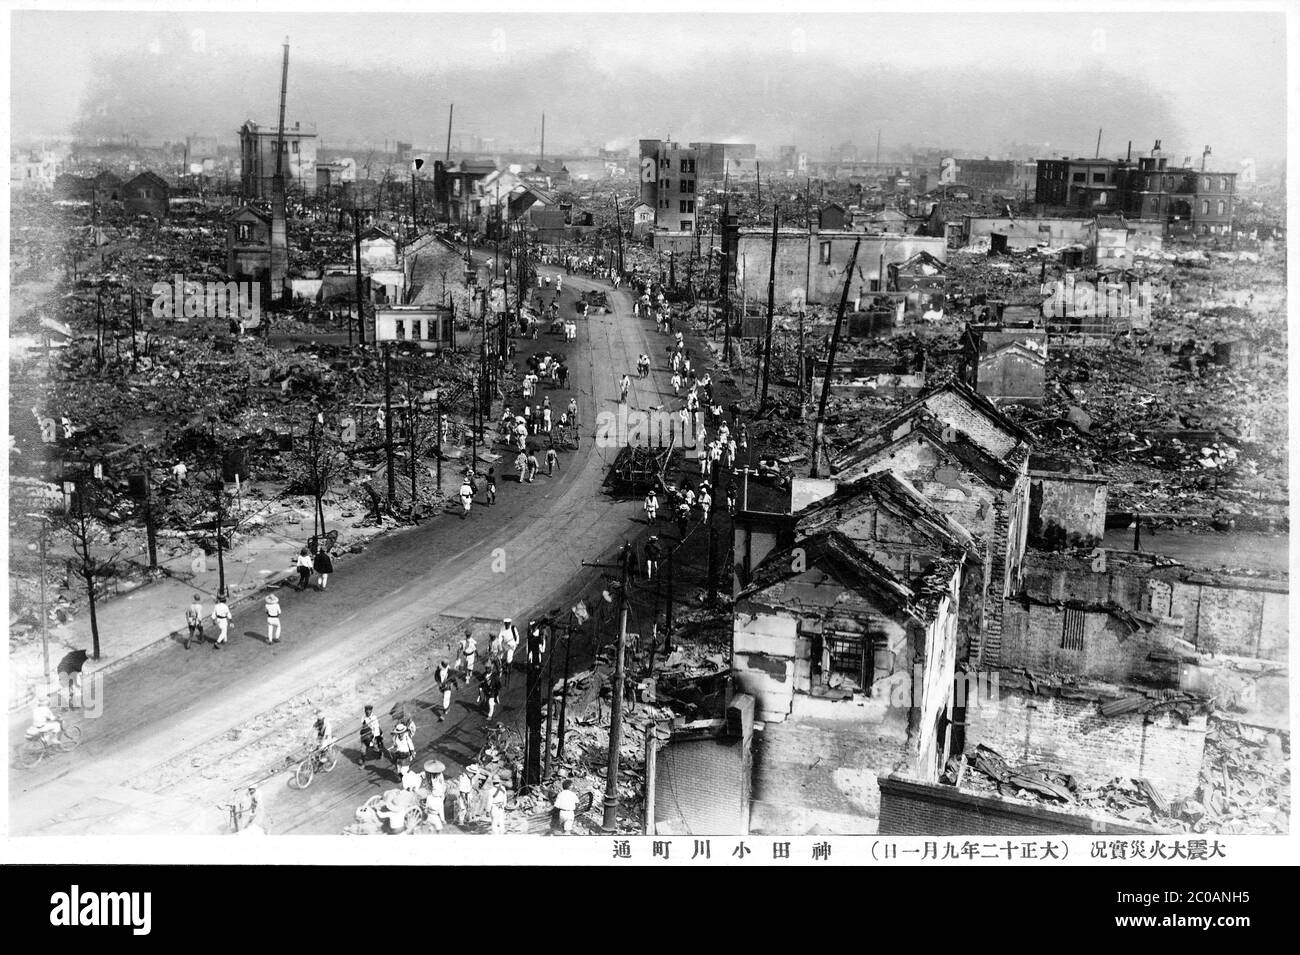 [ 1920 Giappone - Grande terremoto di Kanto ] - la devastazione a Ogawamachi Dori a Kanda, Tokyo causata dal Grande terremoto di Kanto (Kanto Daishinsai) del 1° settembre 1923 (Taisho 12). Il terremoto, con una grandezza stimata tra il 7.9 e il 8.4 in scala Richter, devastò Tokyo, la città portuale di Yokohama, circondando prefetture di Chiba, Kanagawa e Shizuoka, e mietette oltre 140,000 vittime. stampa d'argento in gelatina d'epoca del xx secolo. Foto Stock